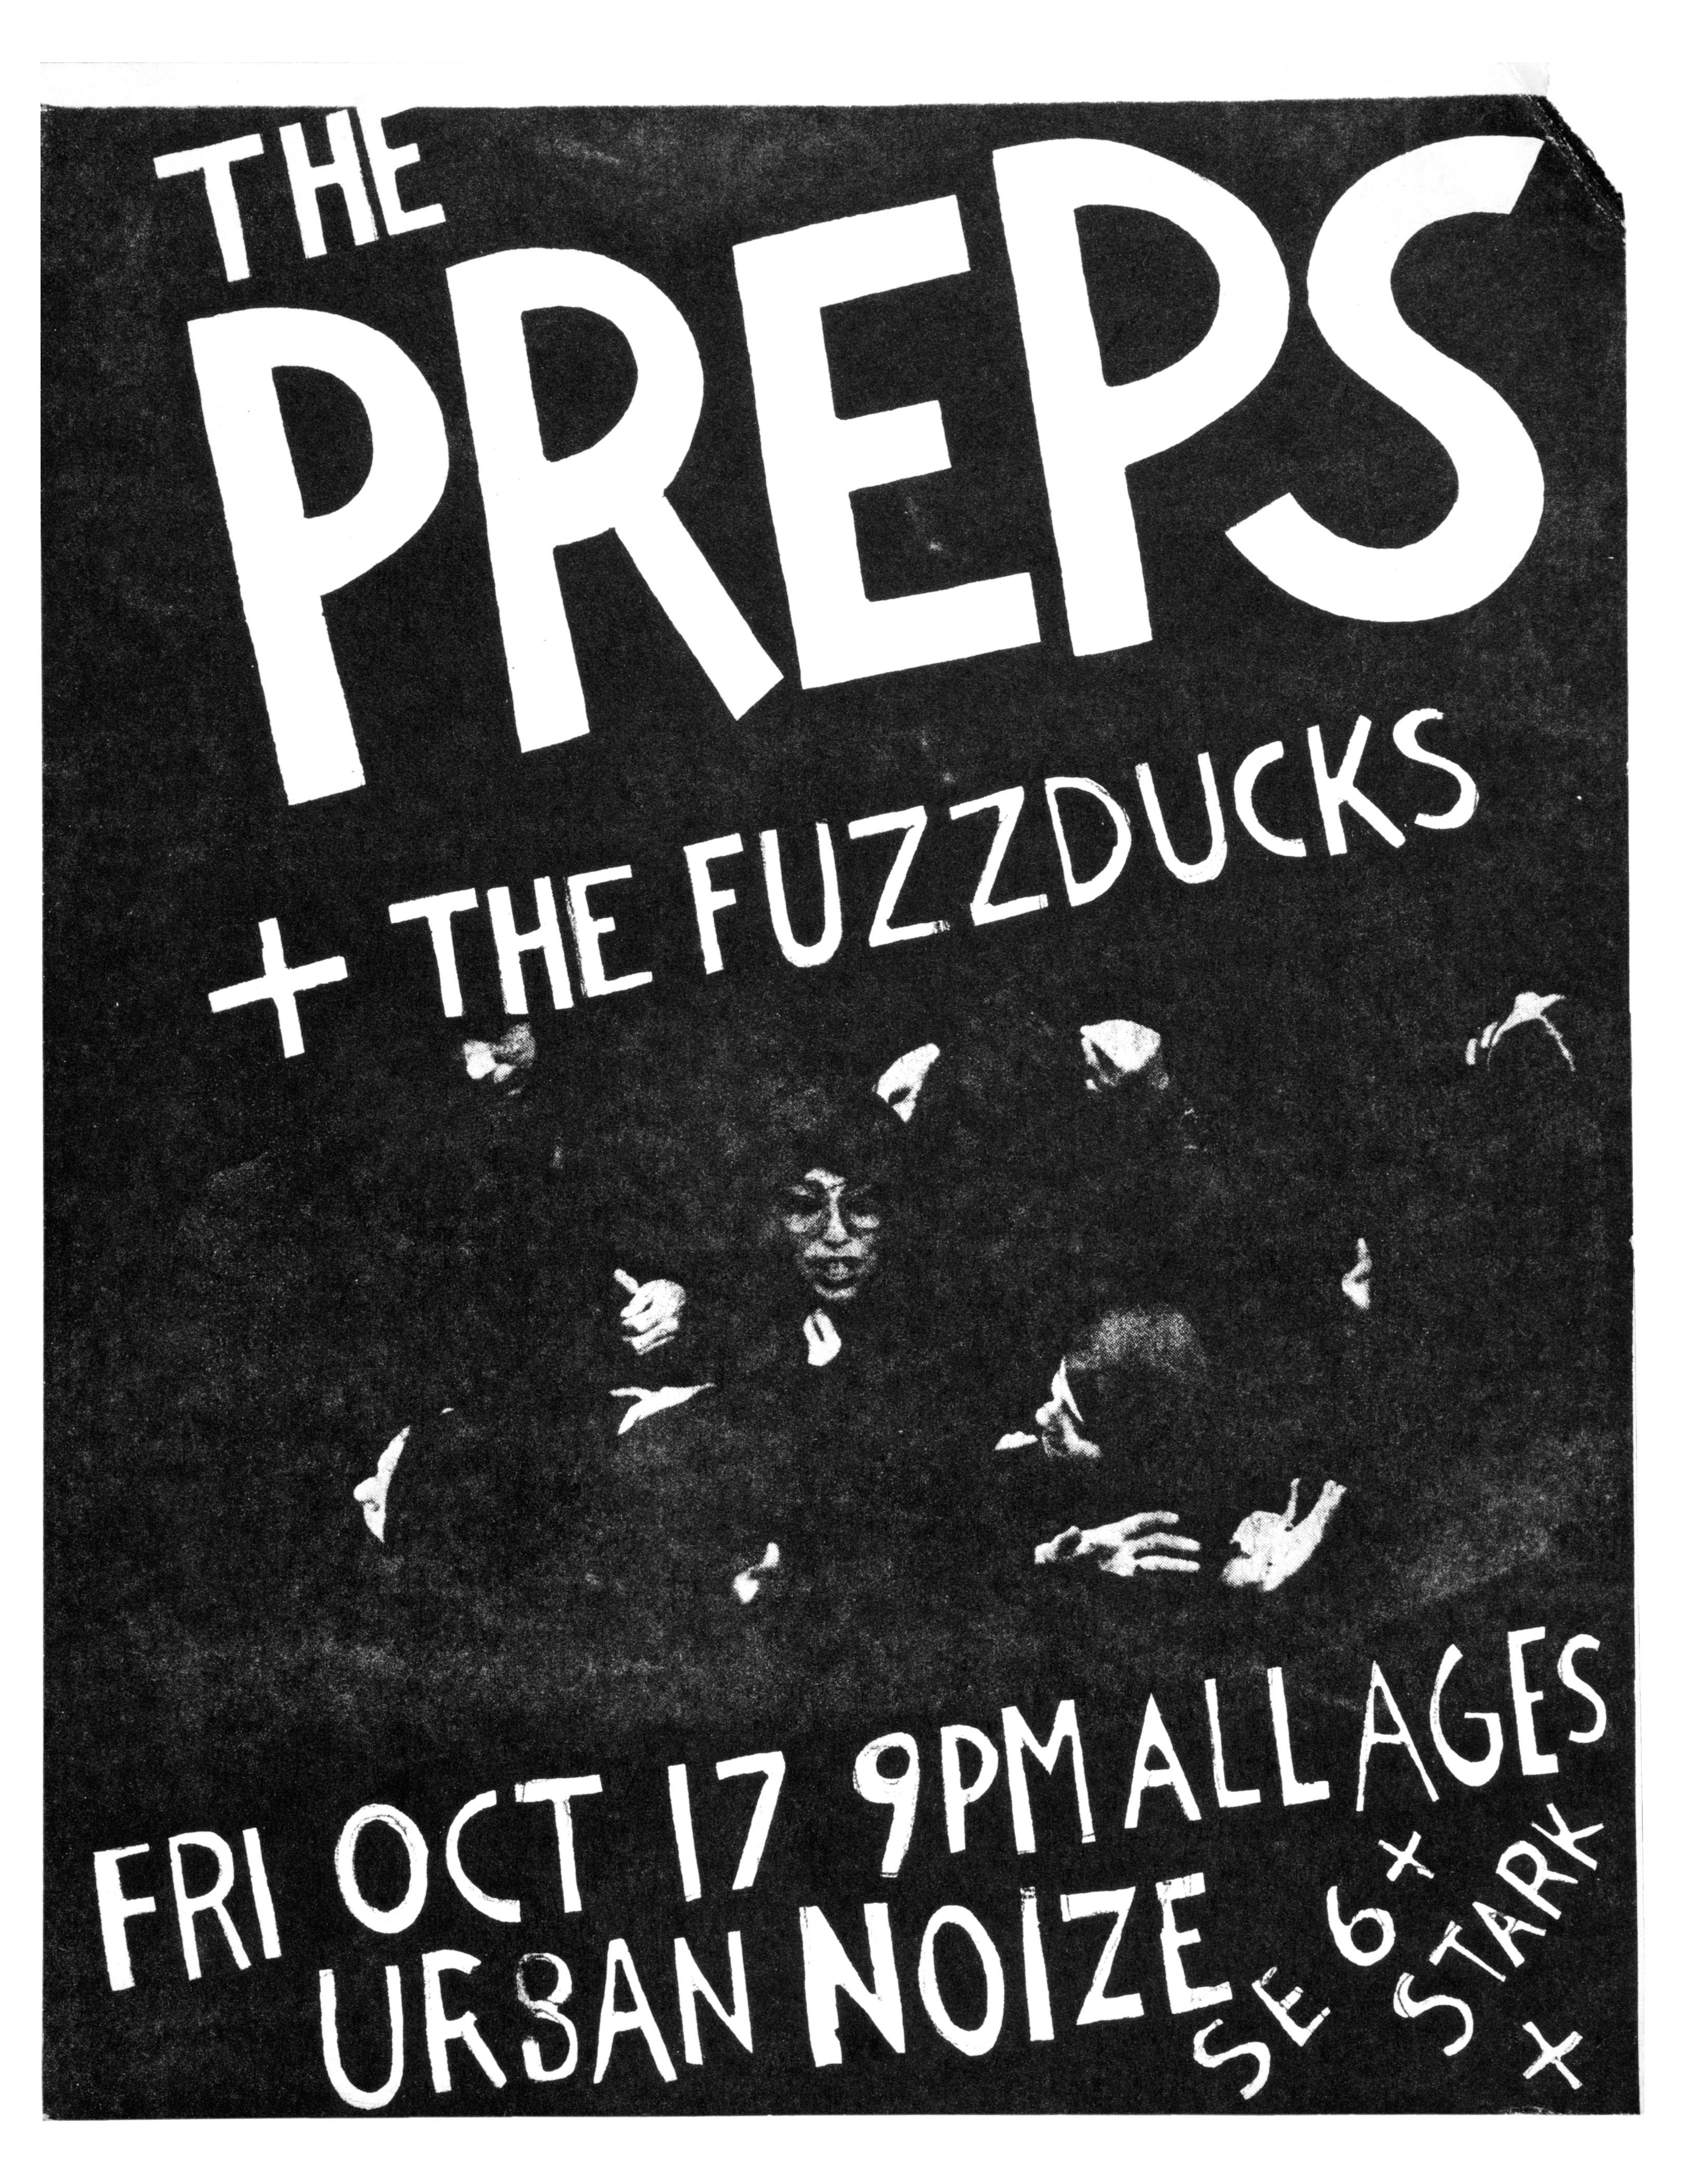 MXP-45.7 Preps 1980 Urban Noize  Oct 17 Concert Poster